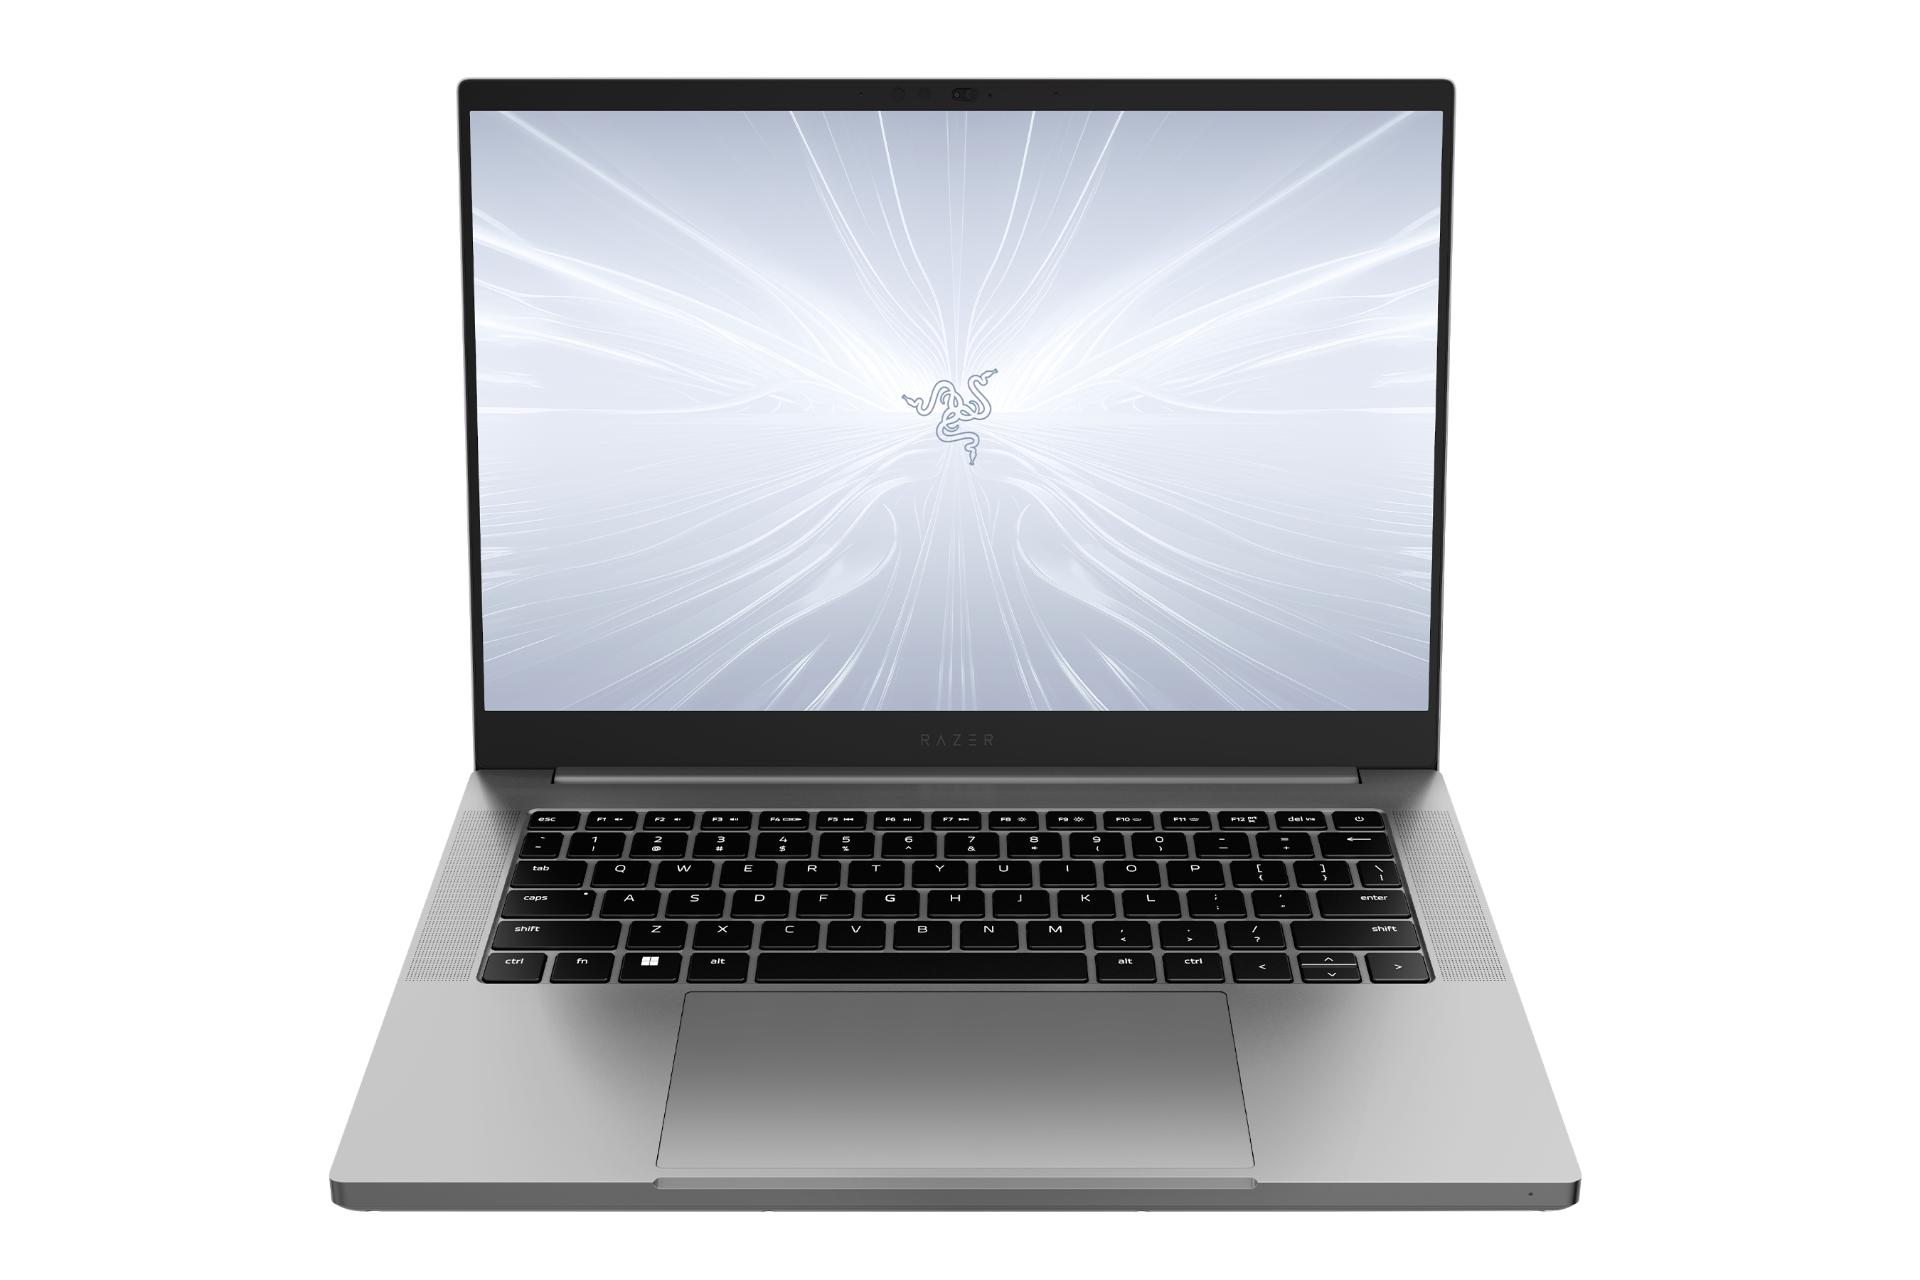 نمای جلوی لپ تاپ بلید 14 ریزر با نمایشگر روشن و نمایش کیبورد رنگ خاکستری